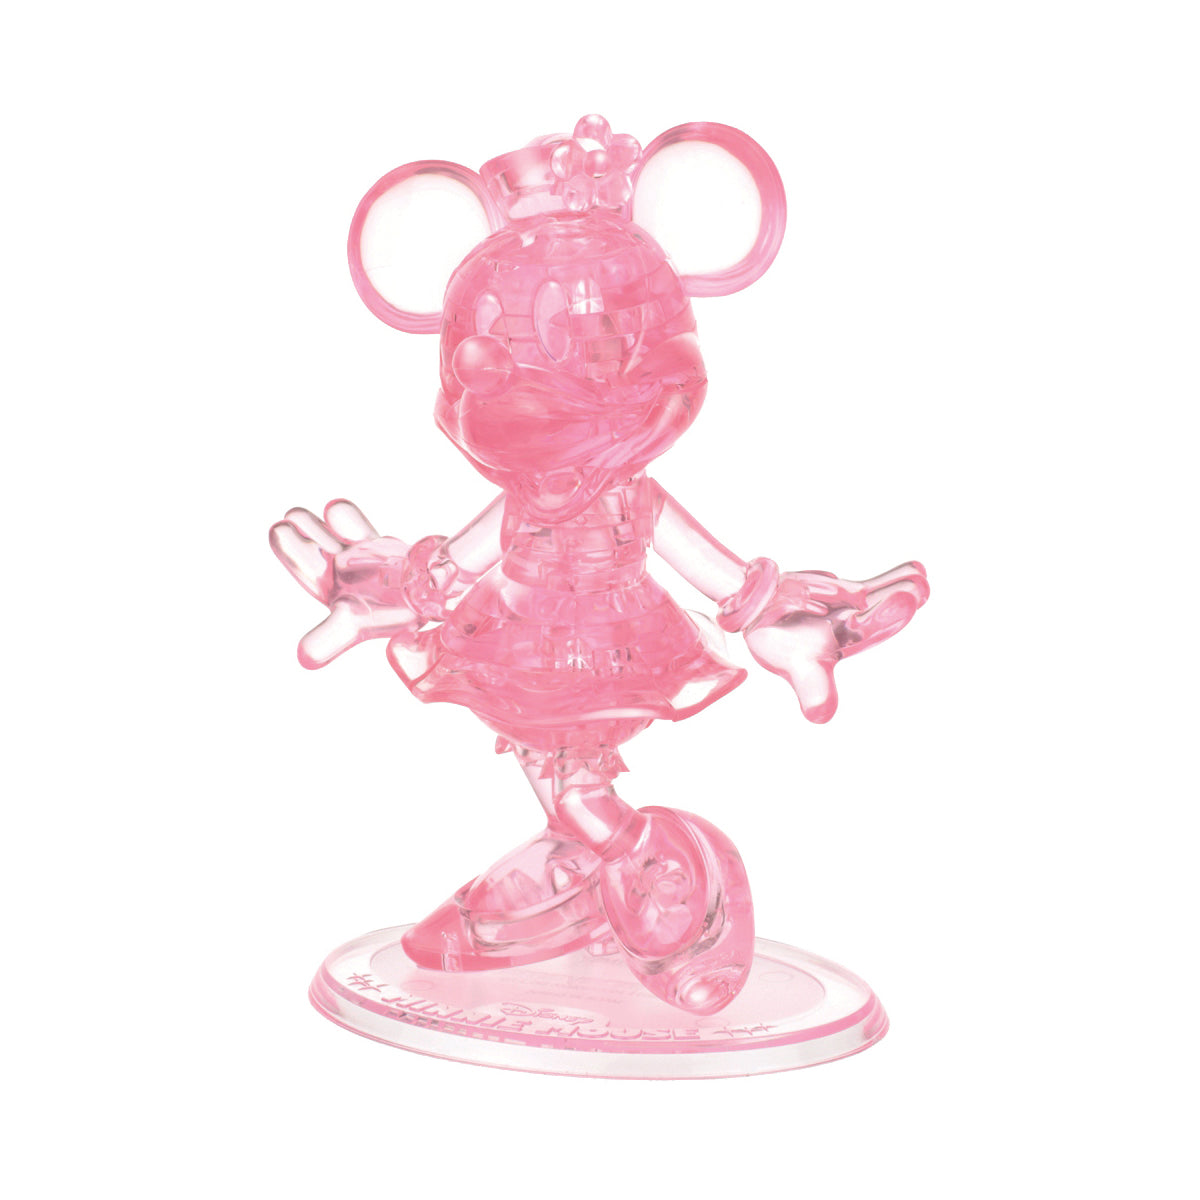 3D Crystal Puzzle - Disney Minnie Mouse: 39 Pcs